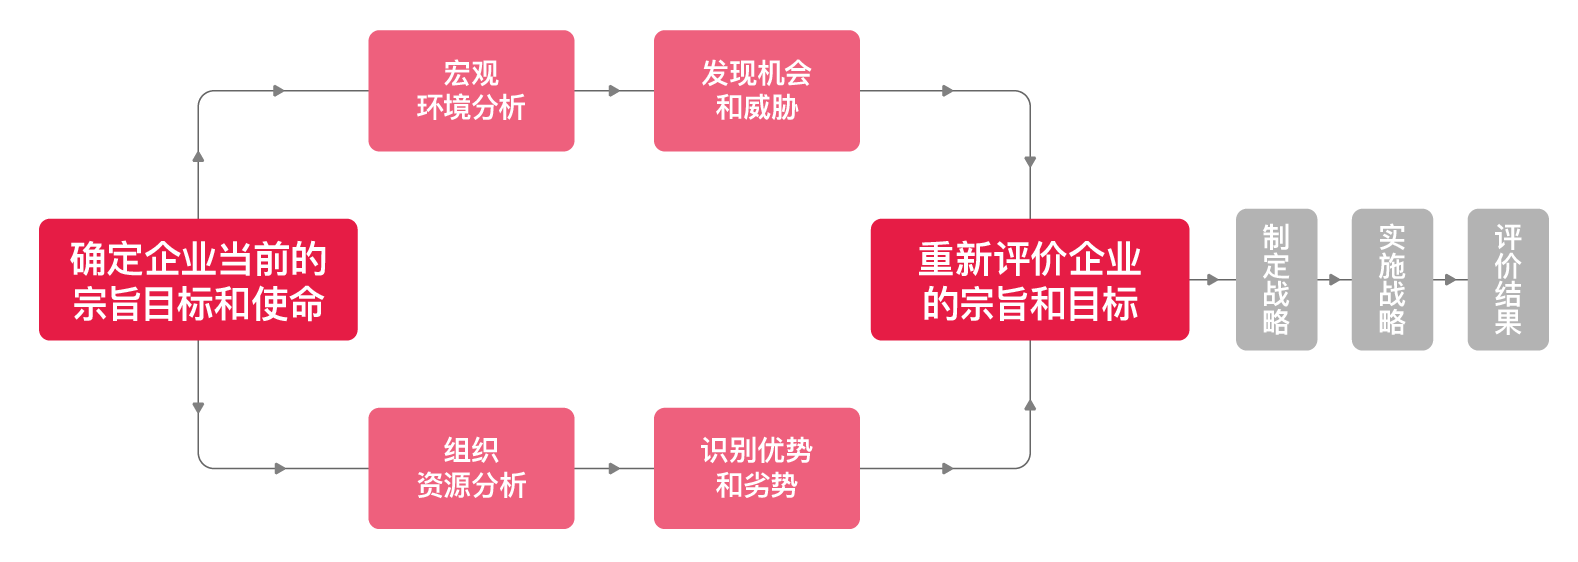 天博综合体育官方app下载战略方法论